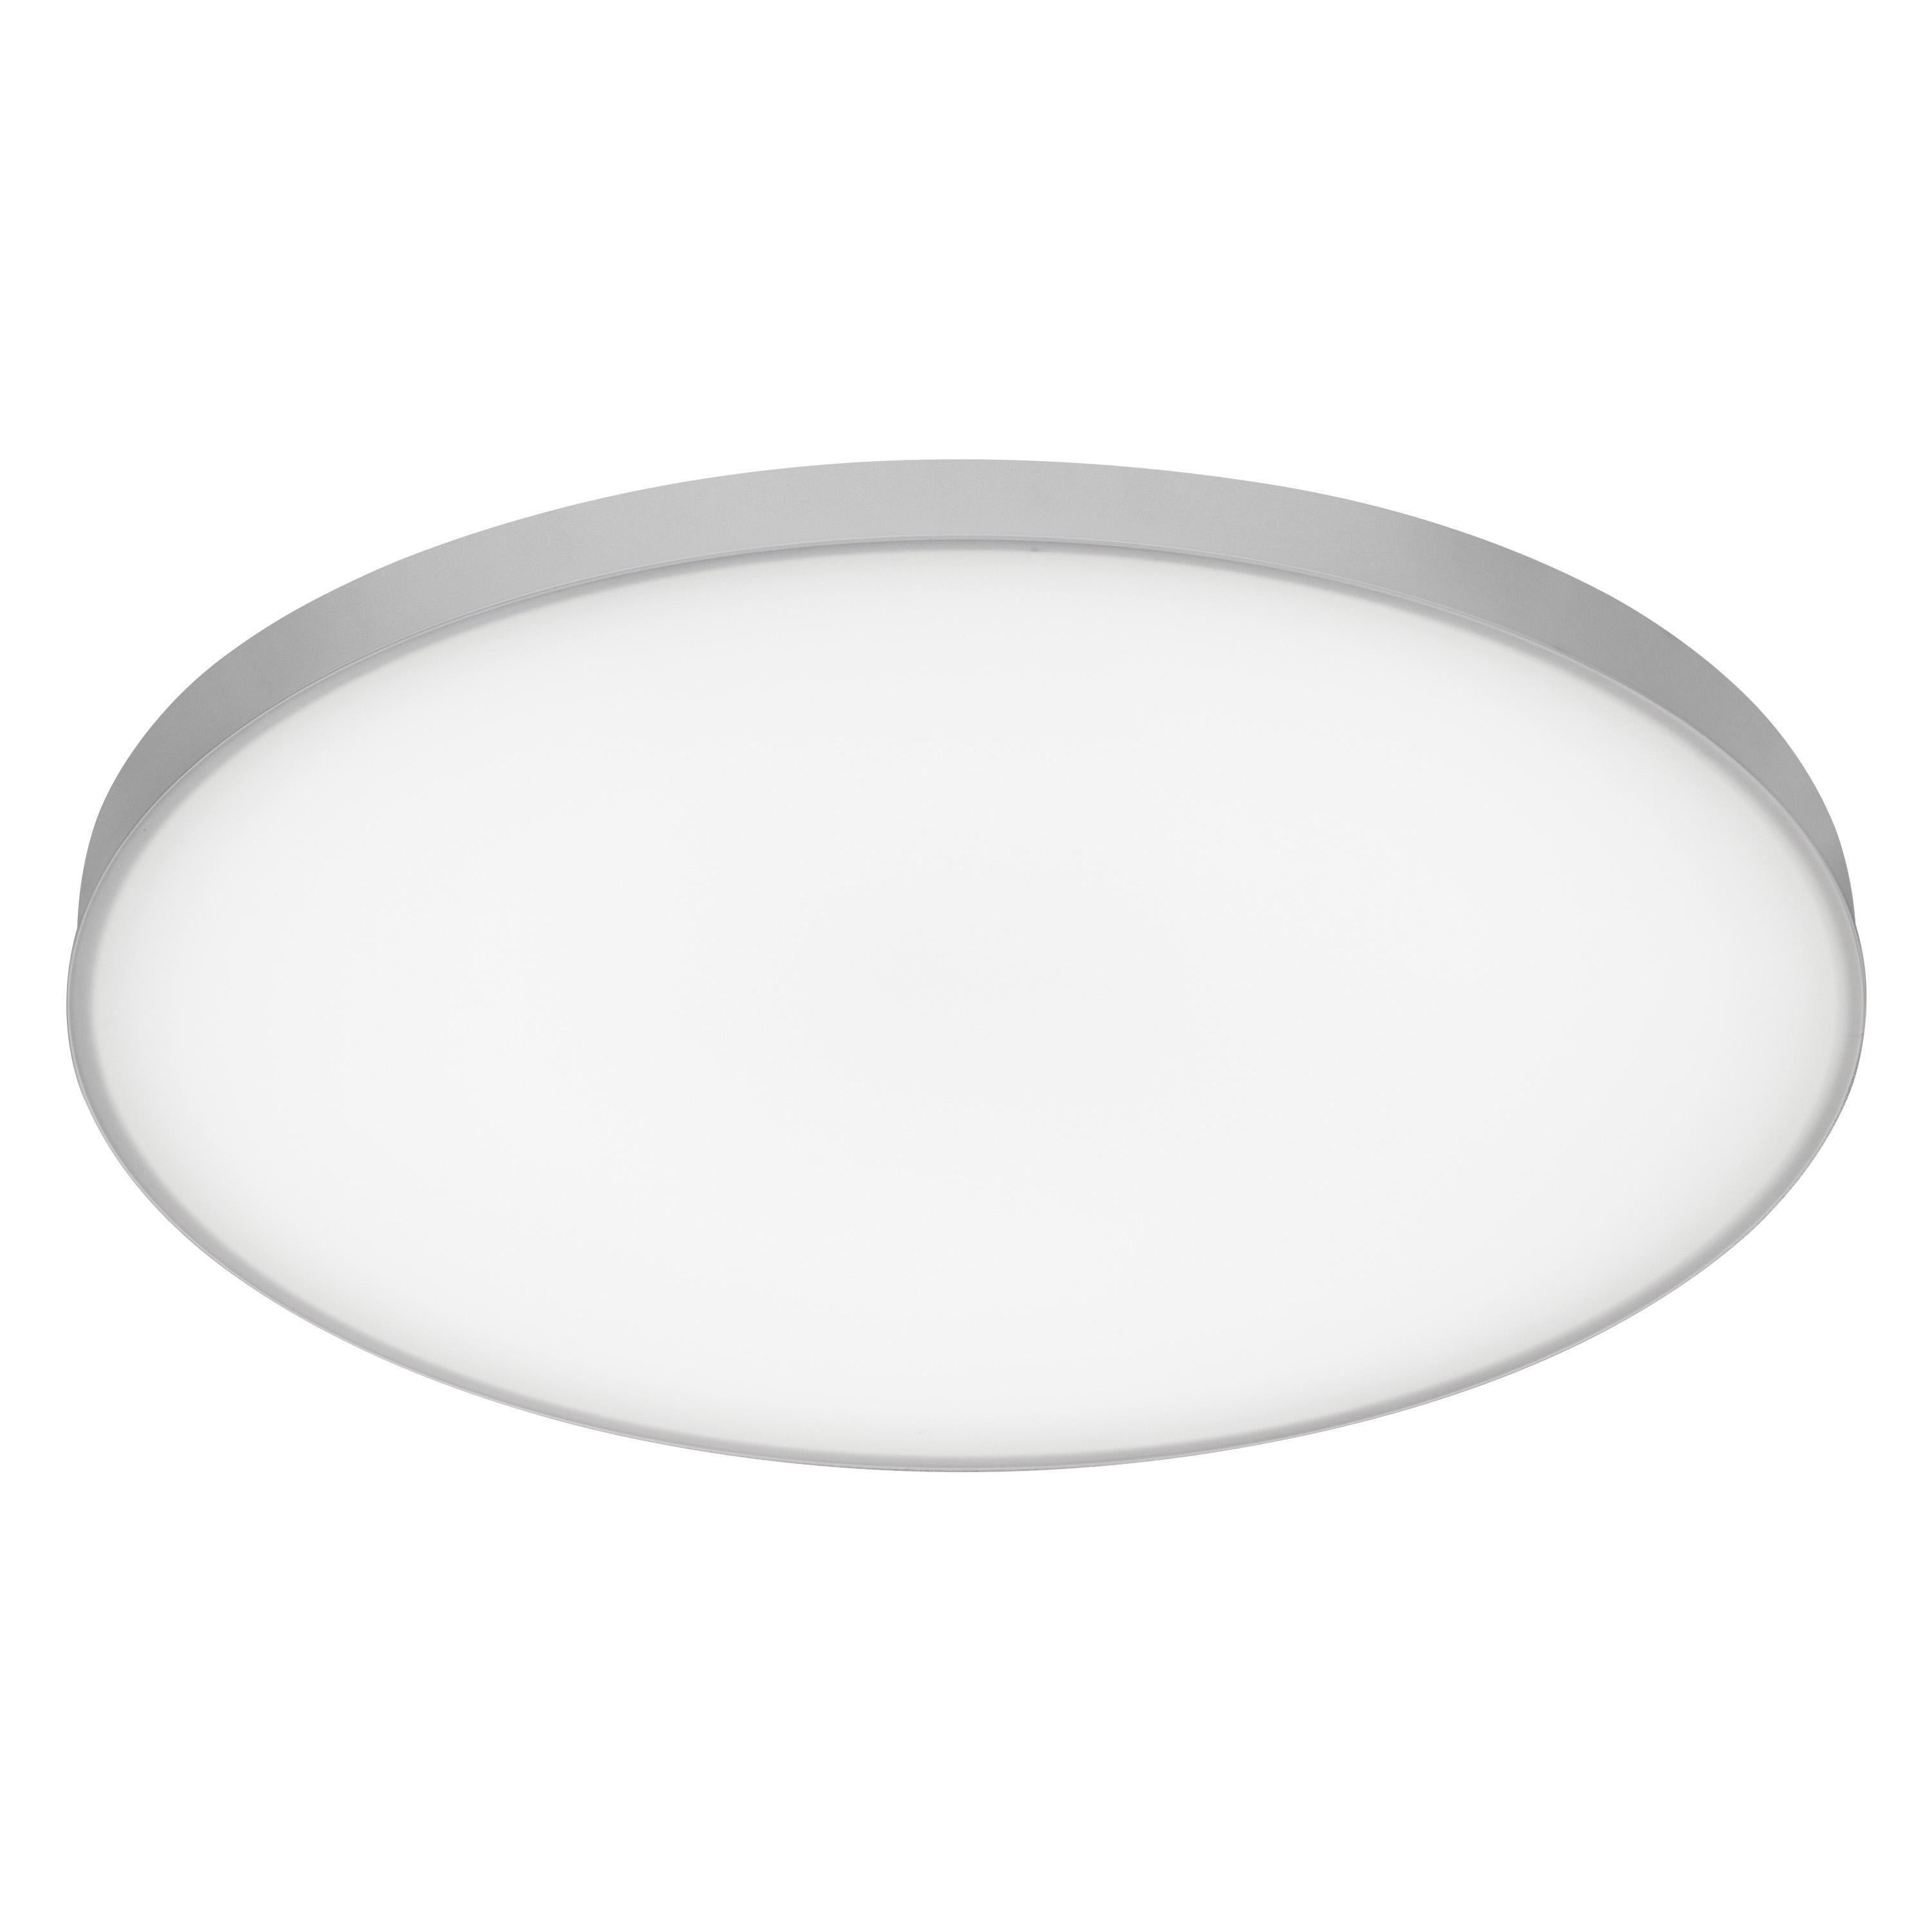 LED-DECKENLEUCHTE Planon Frameless 30/6,5 cm   - Weiß, Basics, Metall (30/6,5cm) - Ledvance